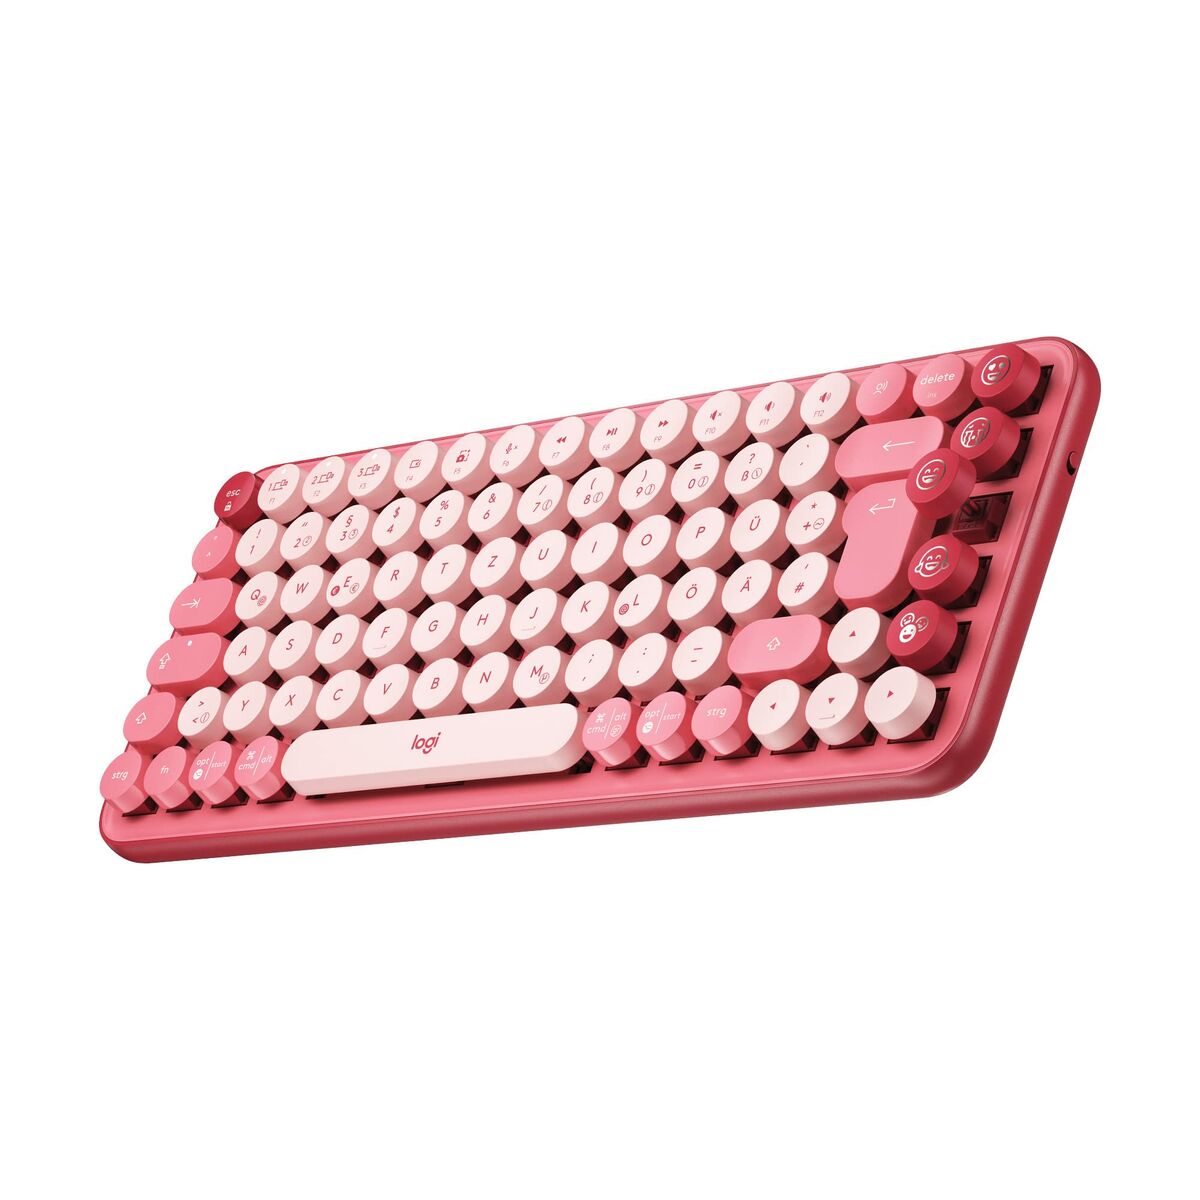 Logitech 920-010721 Qwertz Deutsche kabellose Tastatur (Restauriert D)